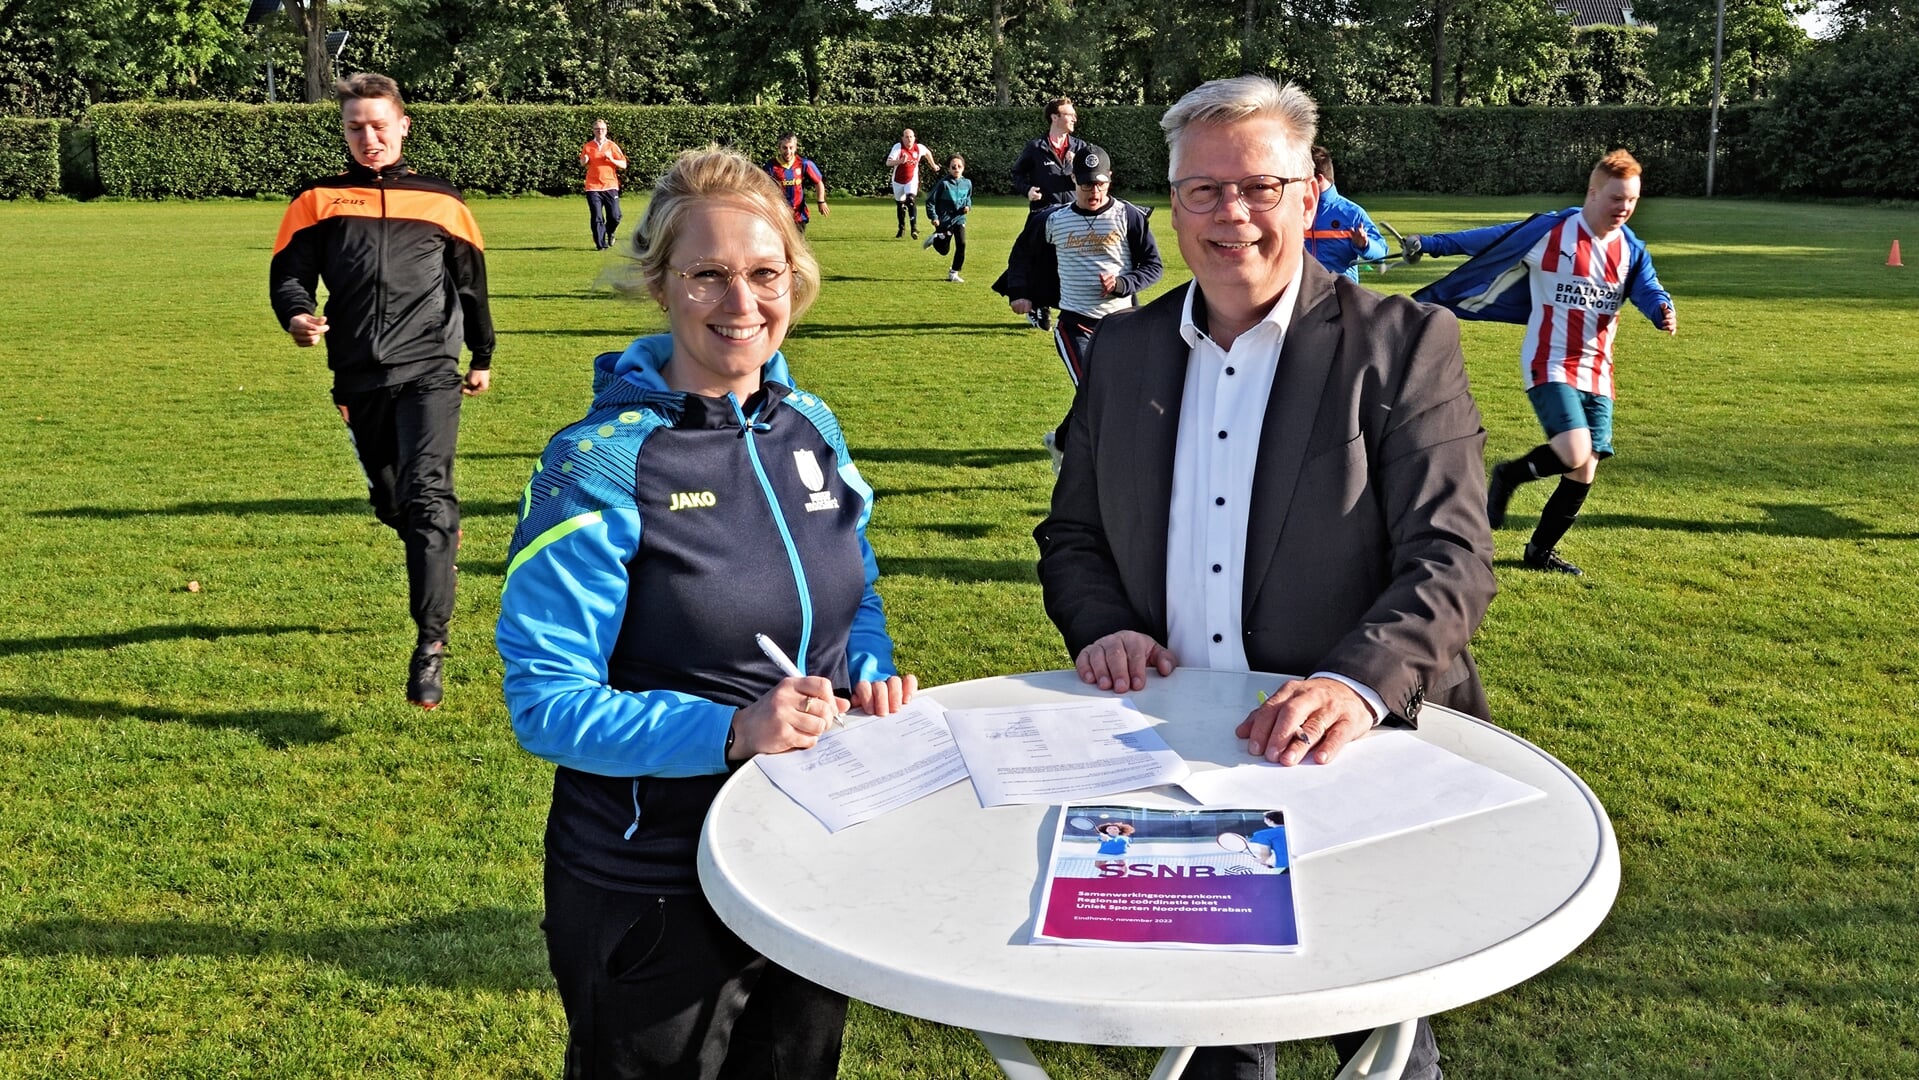 Anne van Melis van SSNB en wethouder Harold van den Broek (Sport) ondertekenen de overeenkomst Uniek Sporten tijdens de training van het G-team van Udi'19.